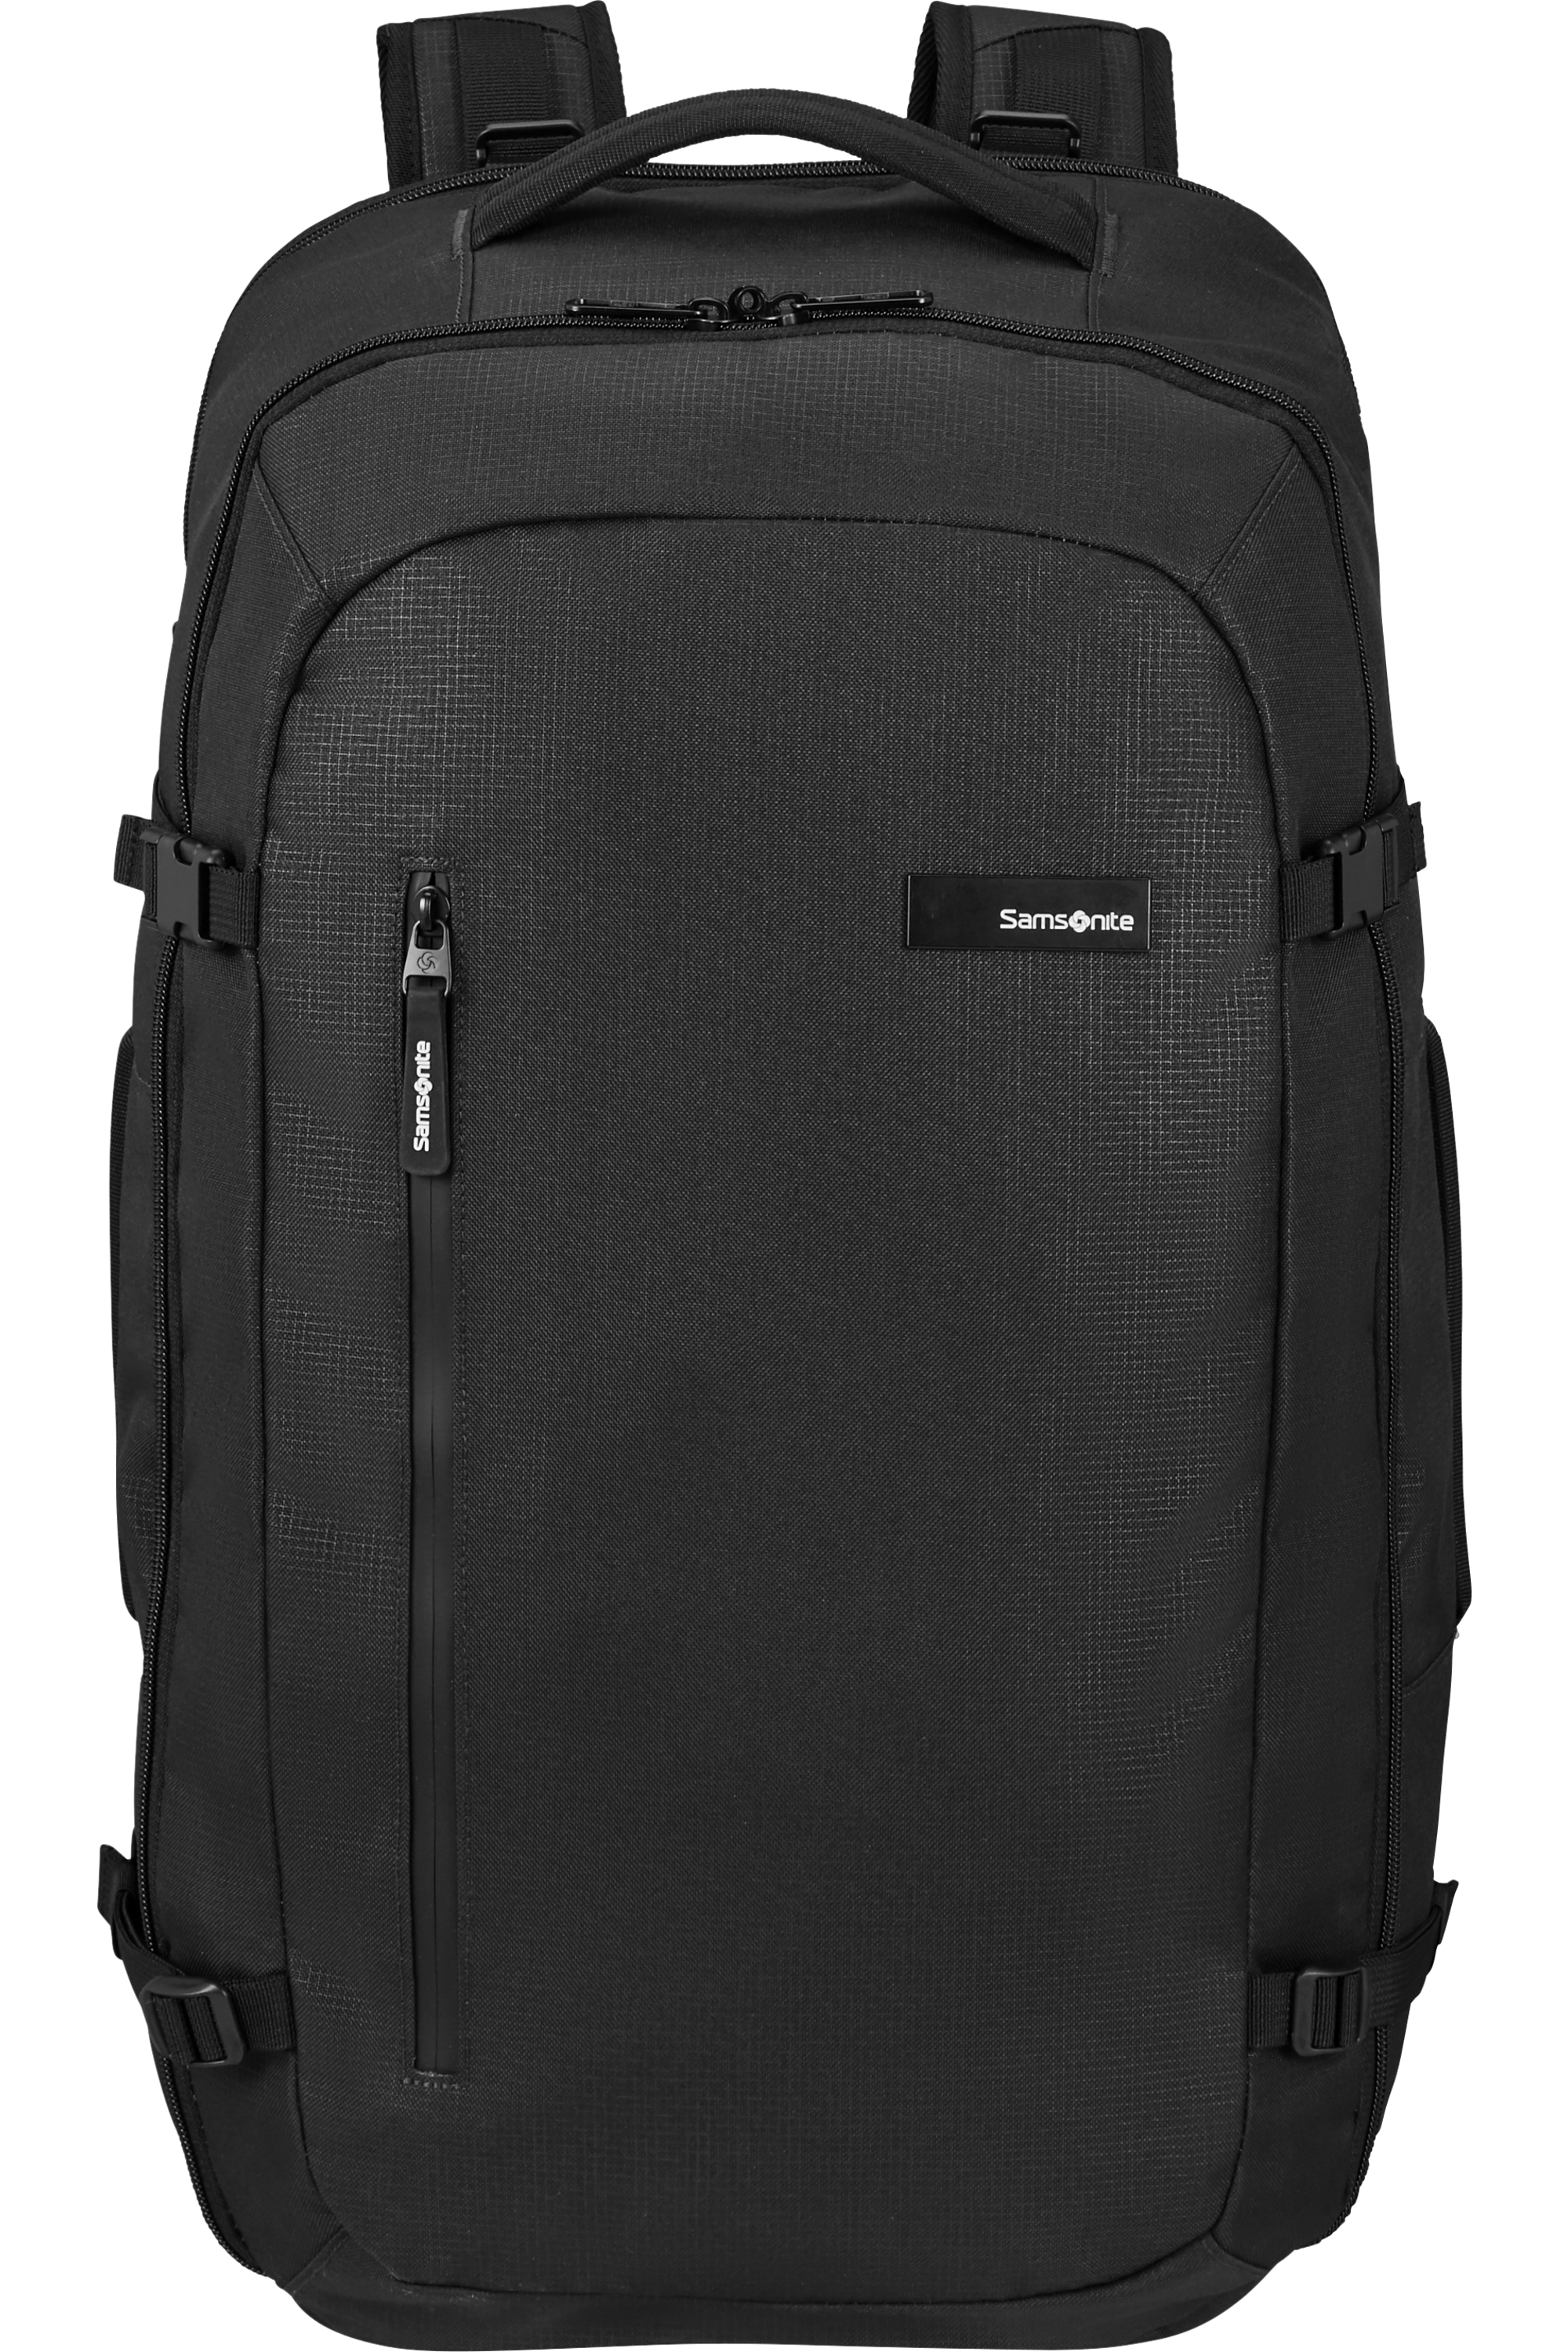 Buy Detour Travel Backpack for USD 97.49 | Samsonite US